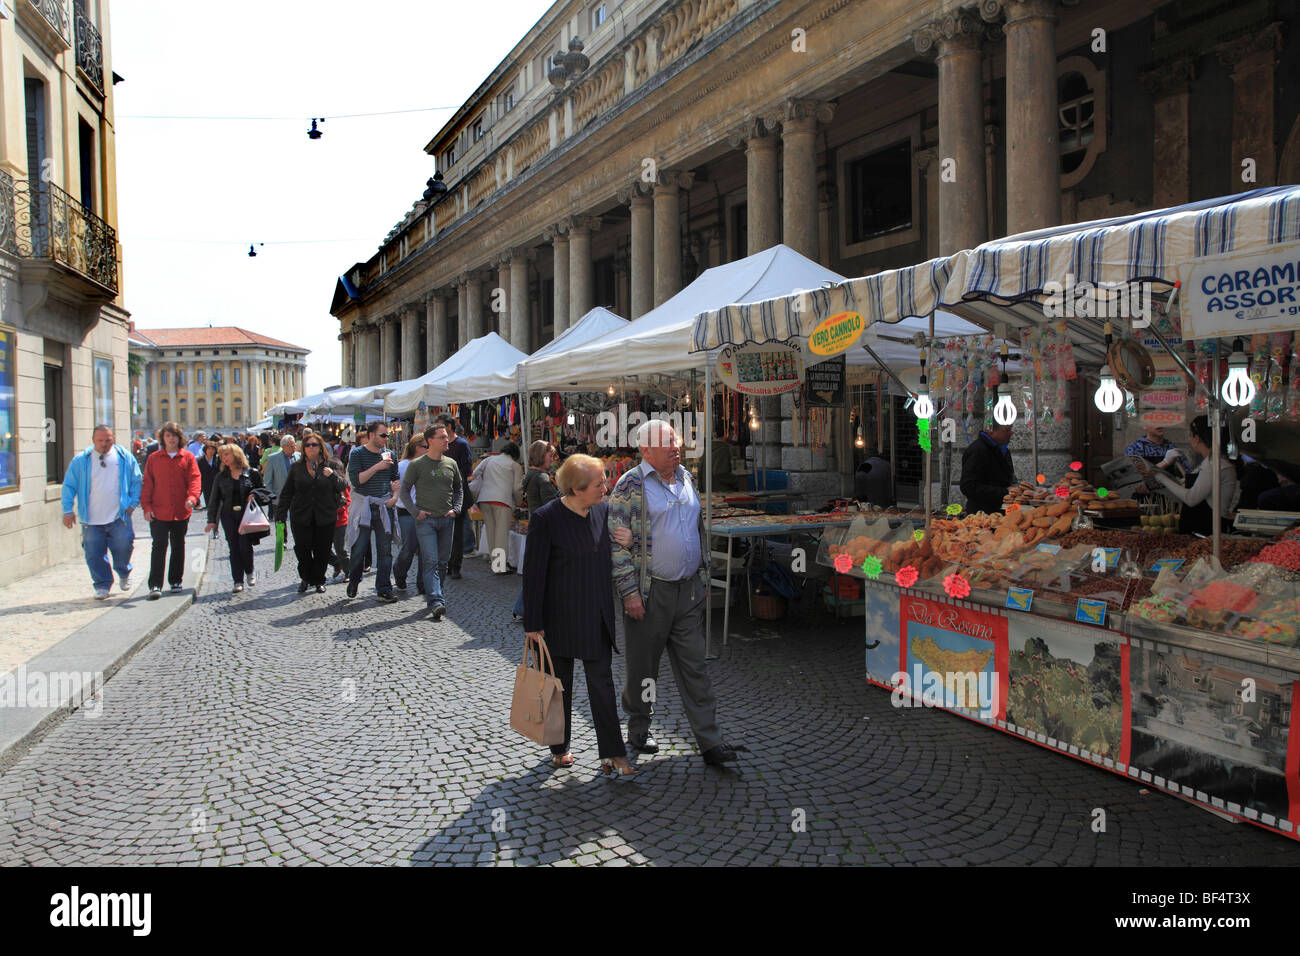 Market, Verona, Italy, Europe Stock Photo